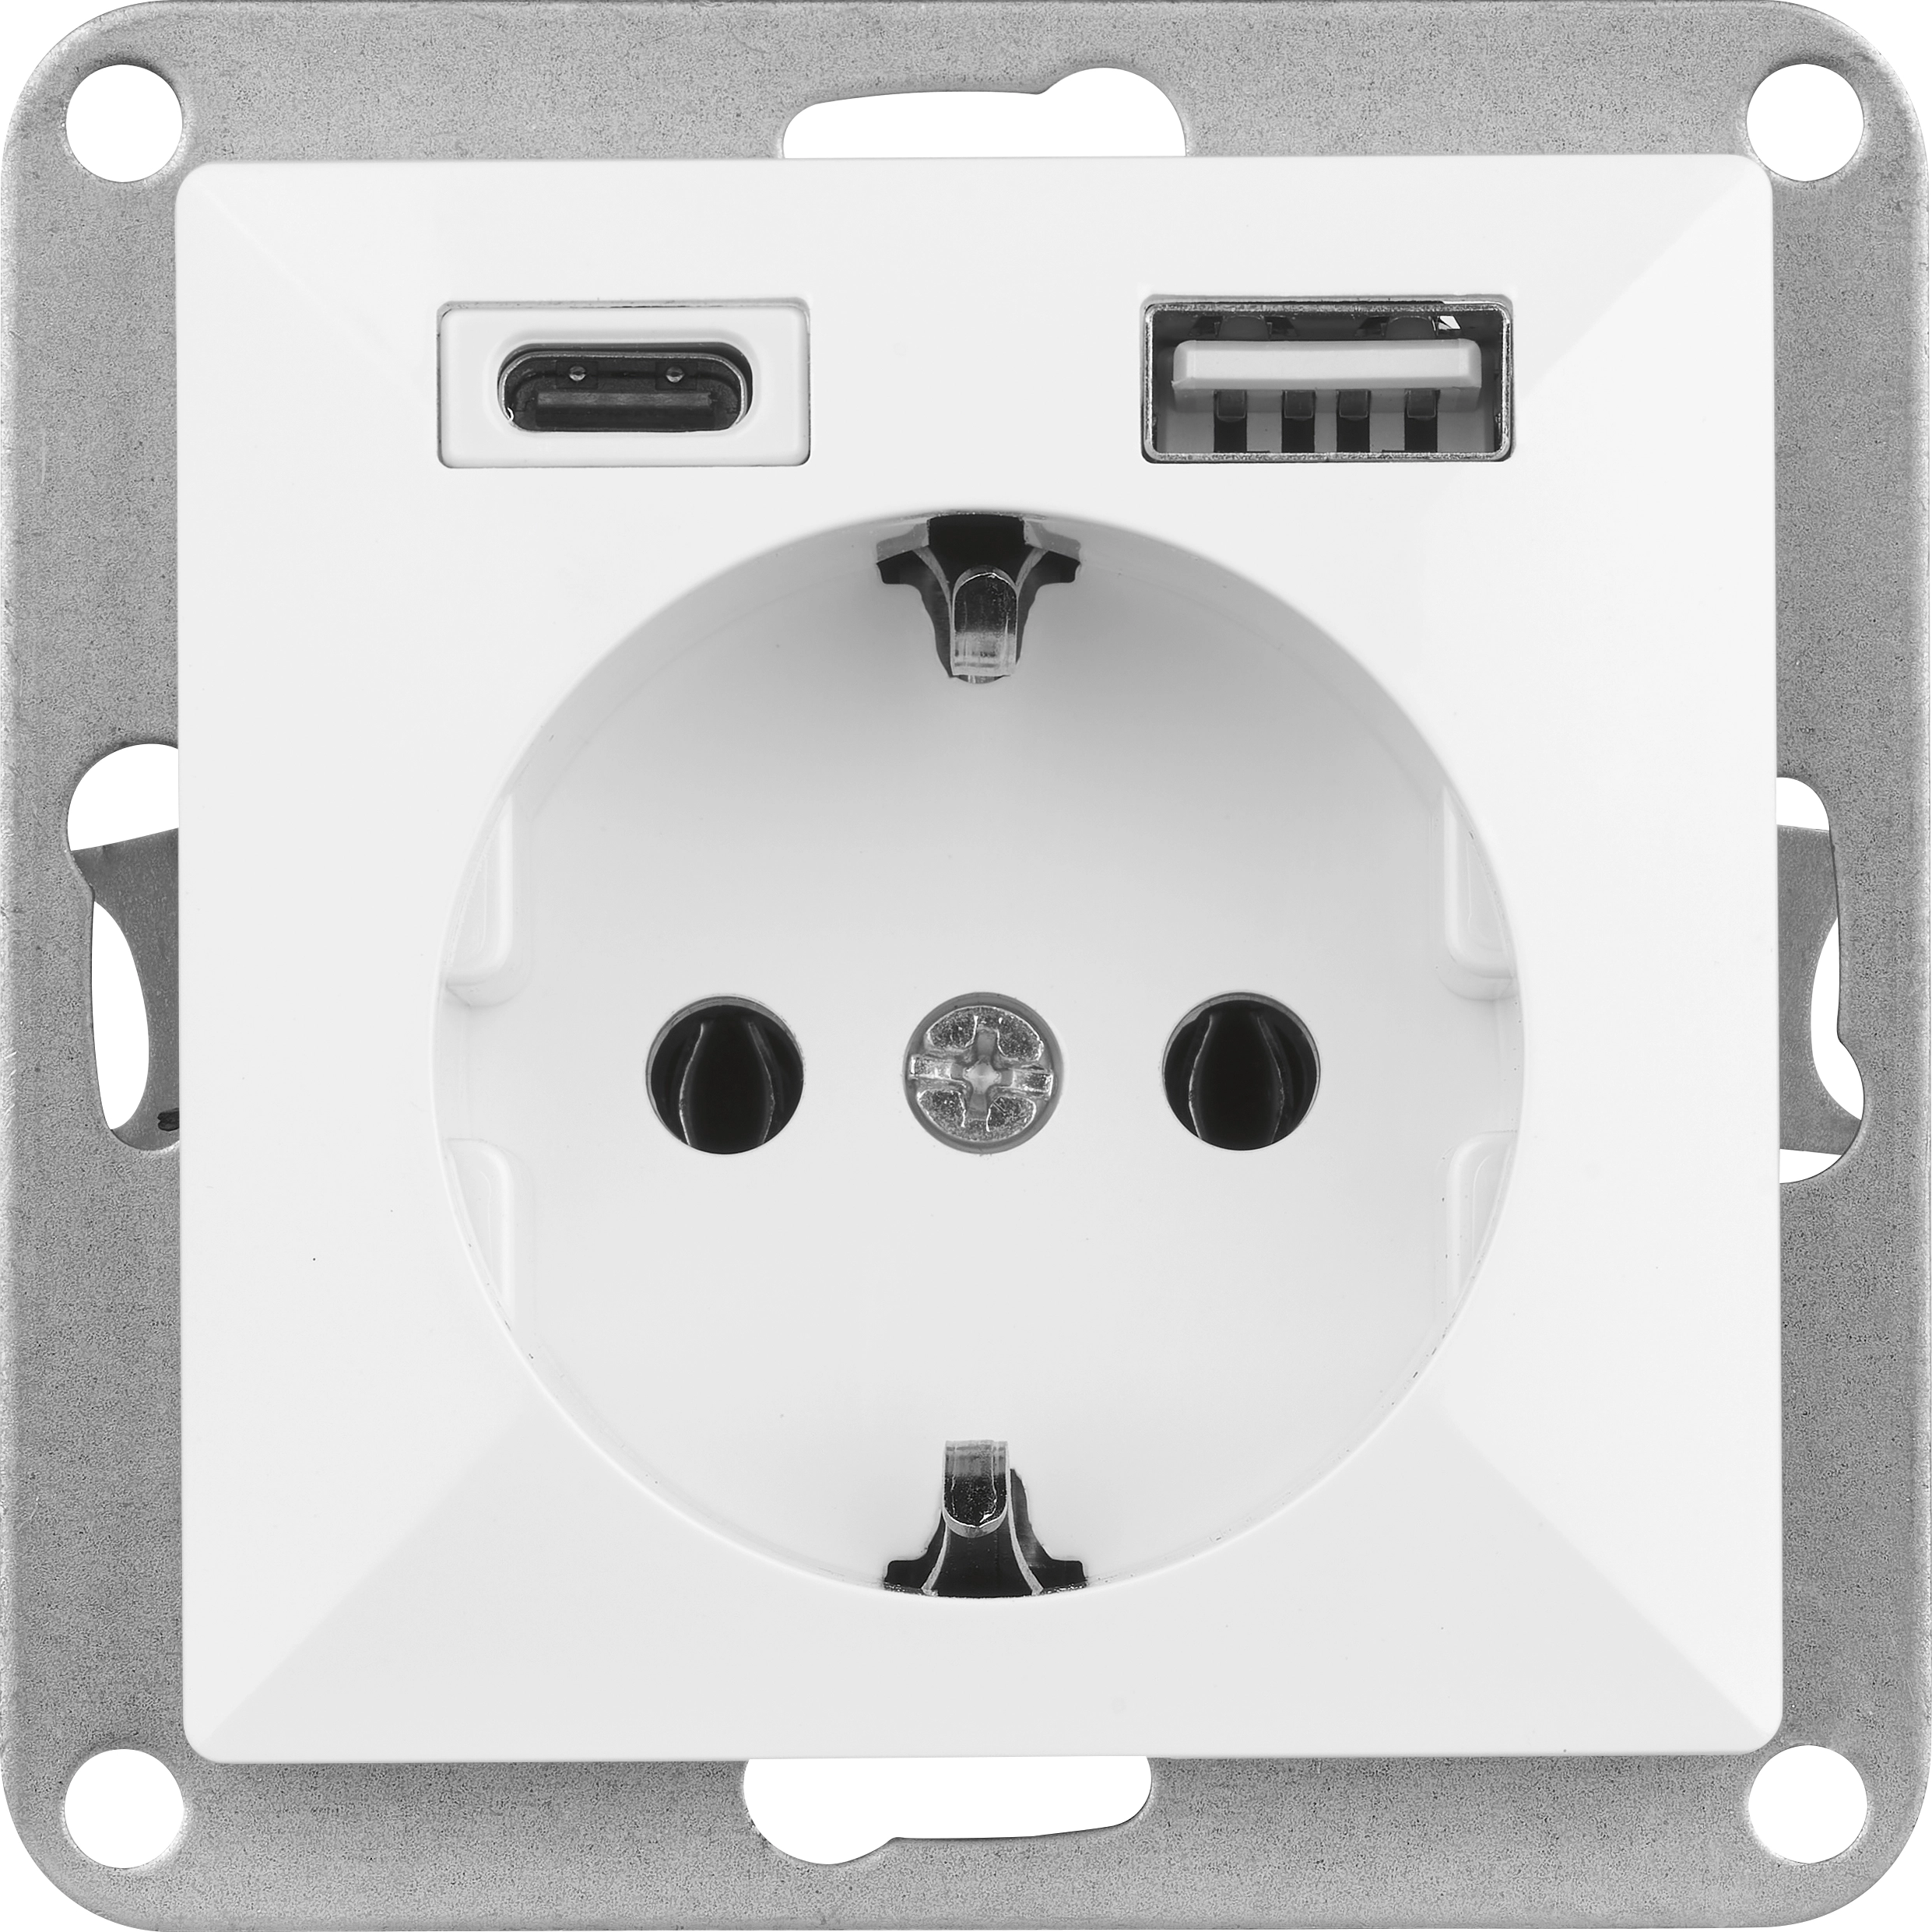 Schutzkontakt-Steckdose Jule Unterputz mit 2 USB-Ports Weiß kaufen bei OBI